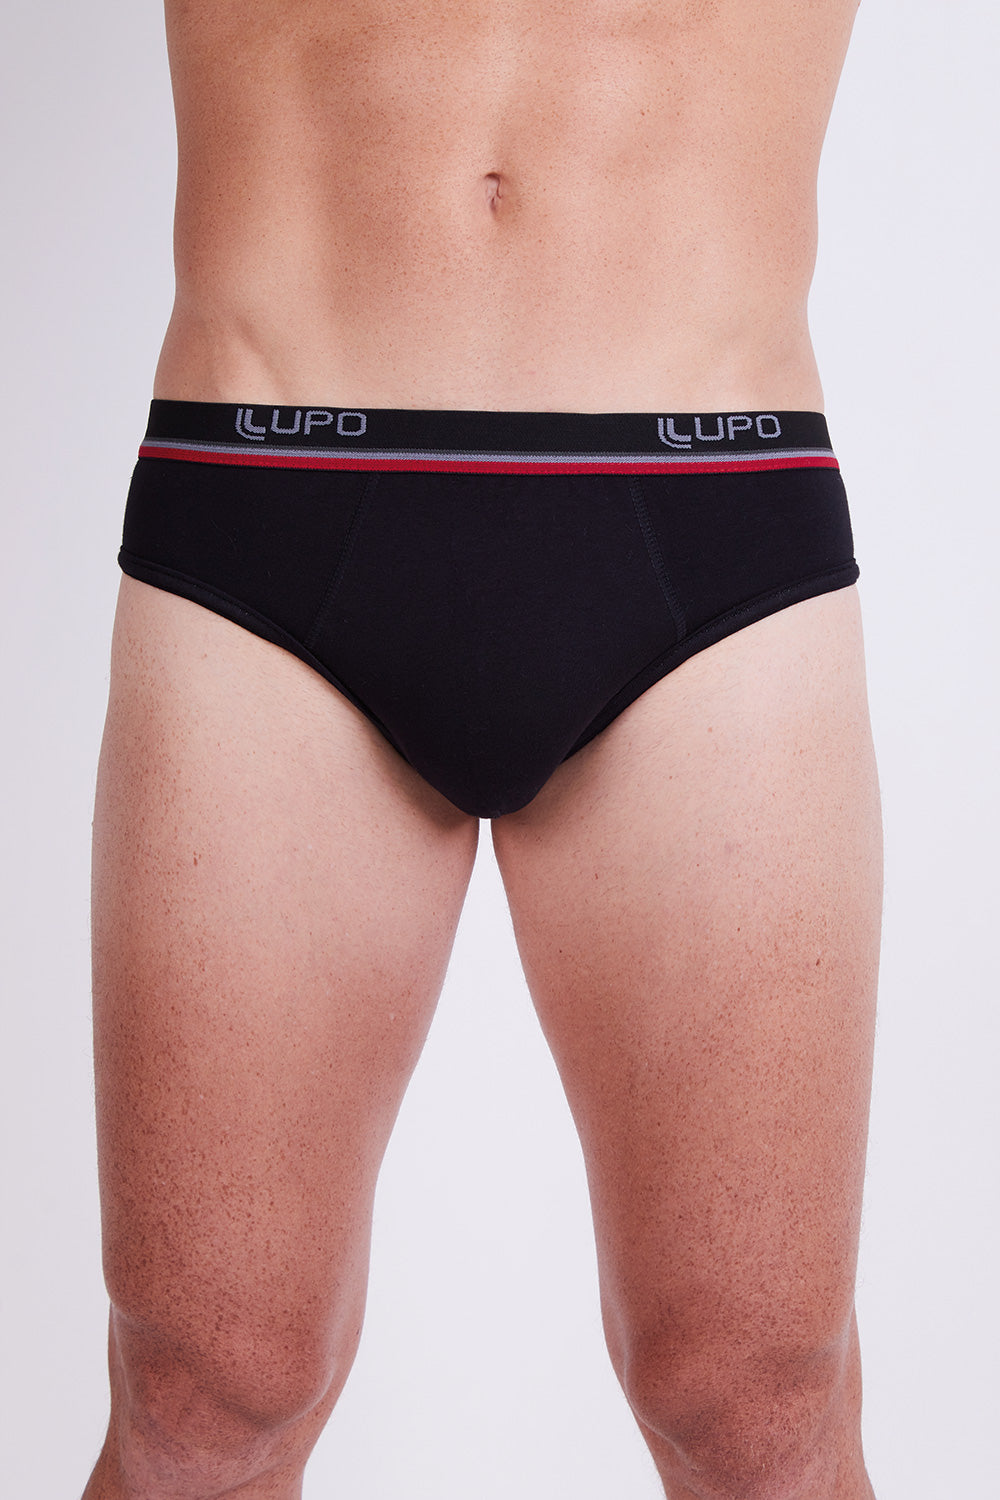 Lapasa Men's underwear ELS Combed Cotton Hip Briefs Stretch Underpants  Reviews 